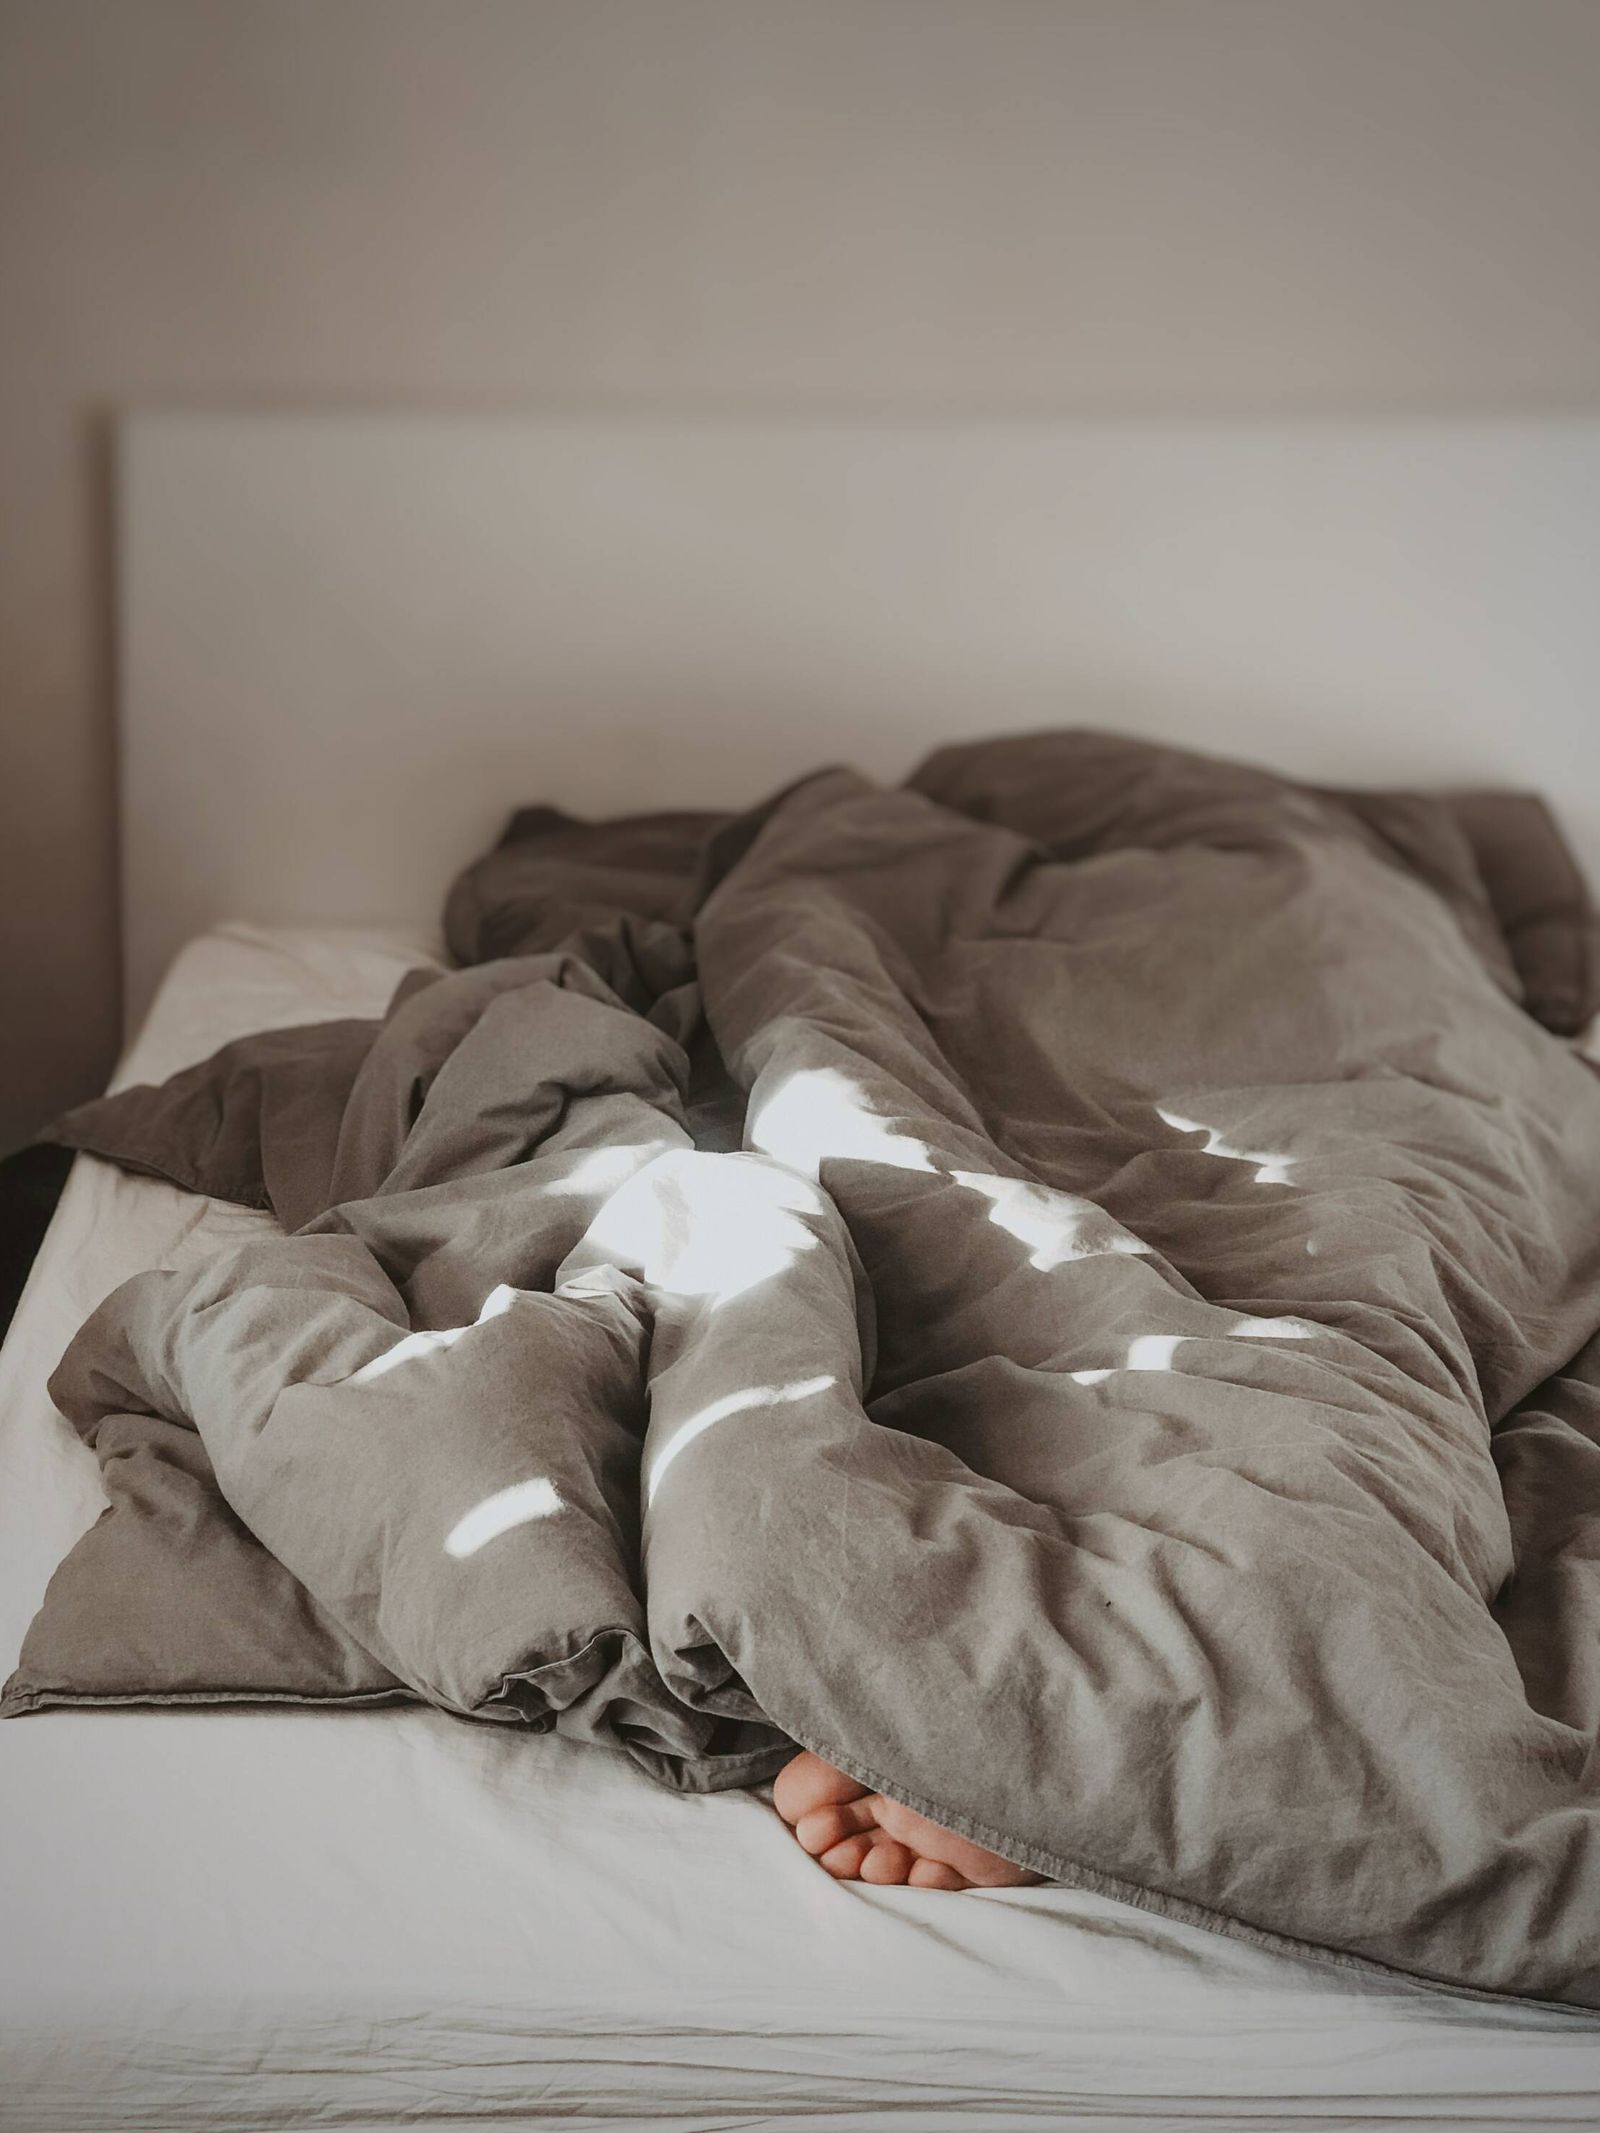 La falta de sueño puede generar problemas metabólicos. (Unsplash/Rehina Sultanova)